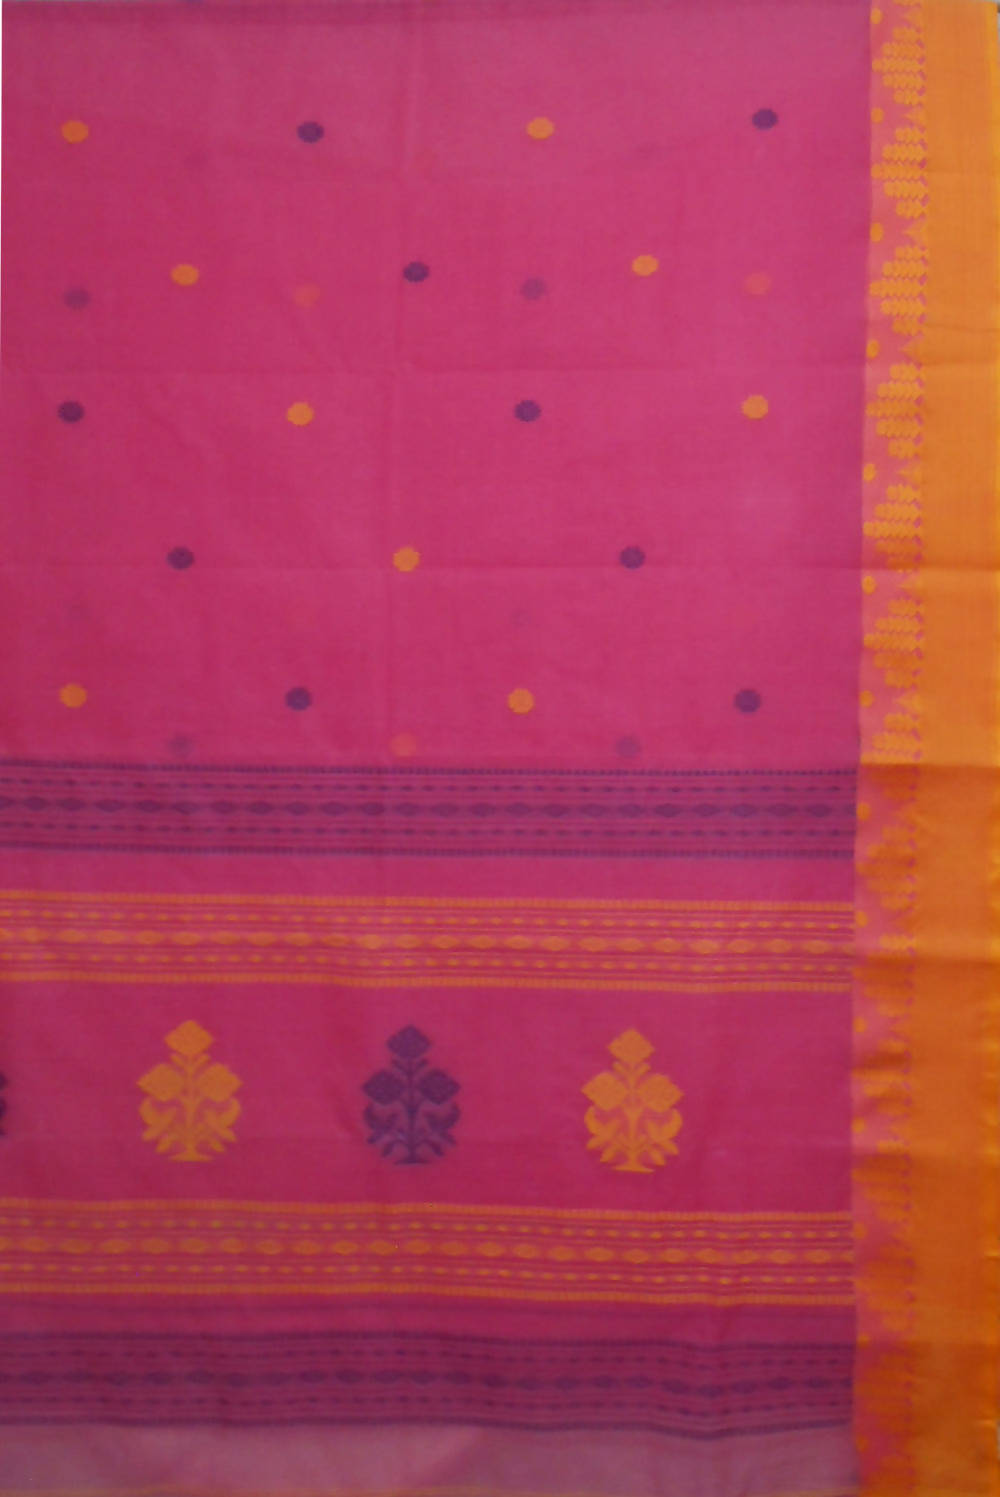 Bengal handloom pink tangail saree